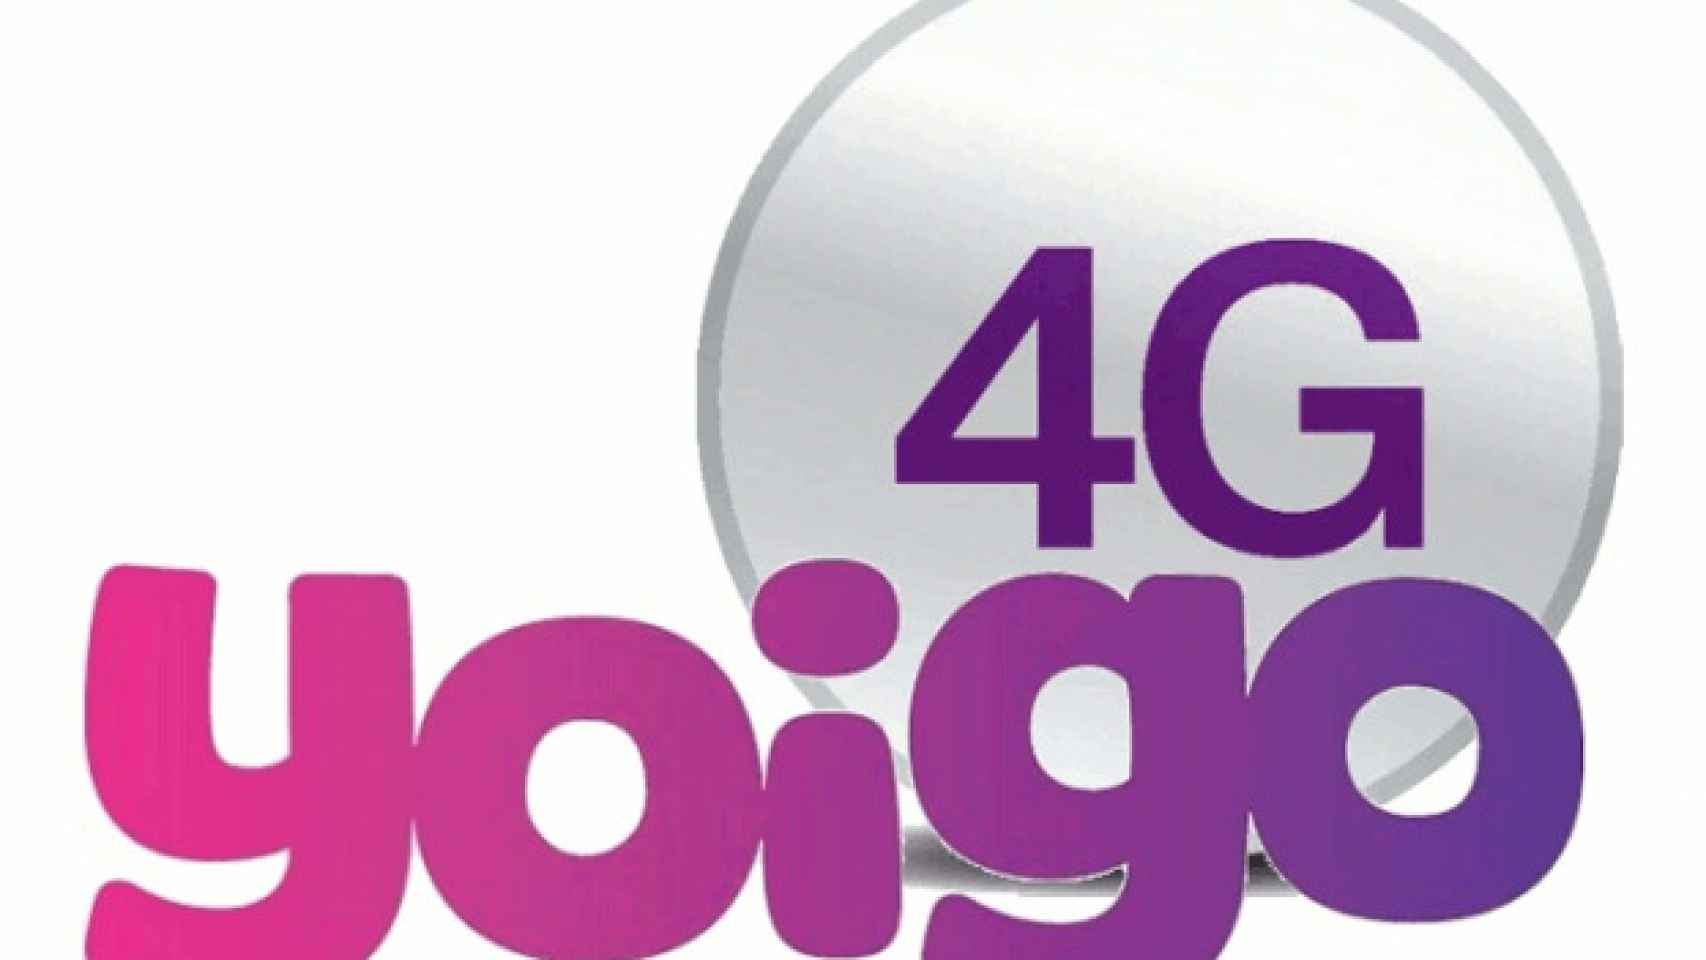 Yoigo ahora ofrece hasta 4GB de datos por 39€